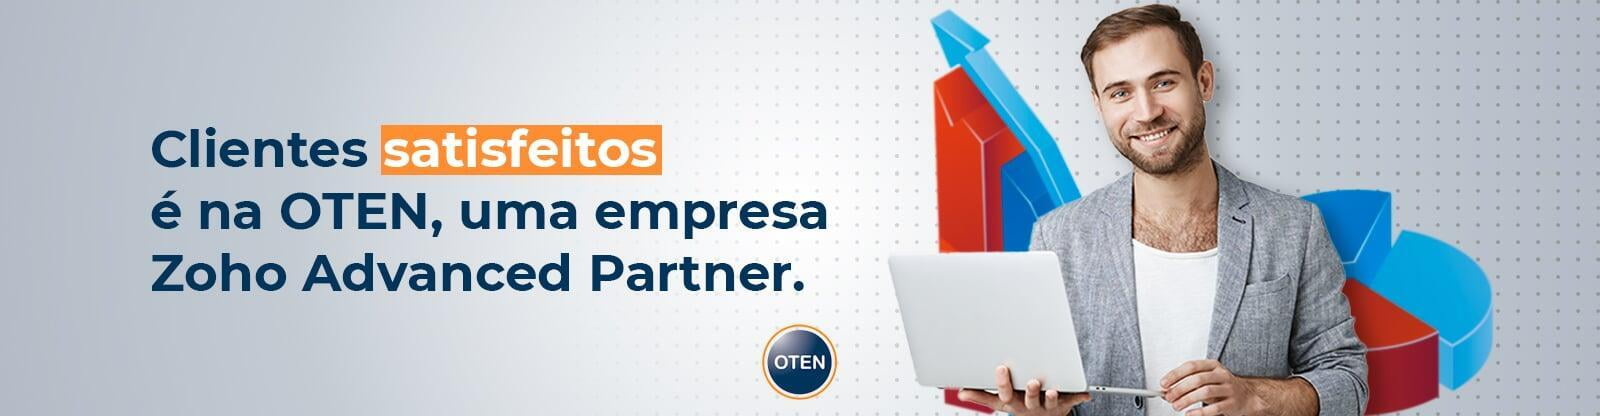 Clientes satisfeitos é na OTEN, uma empresa zoho advanced partner.